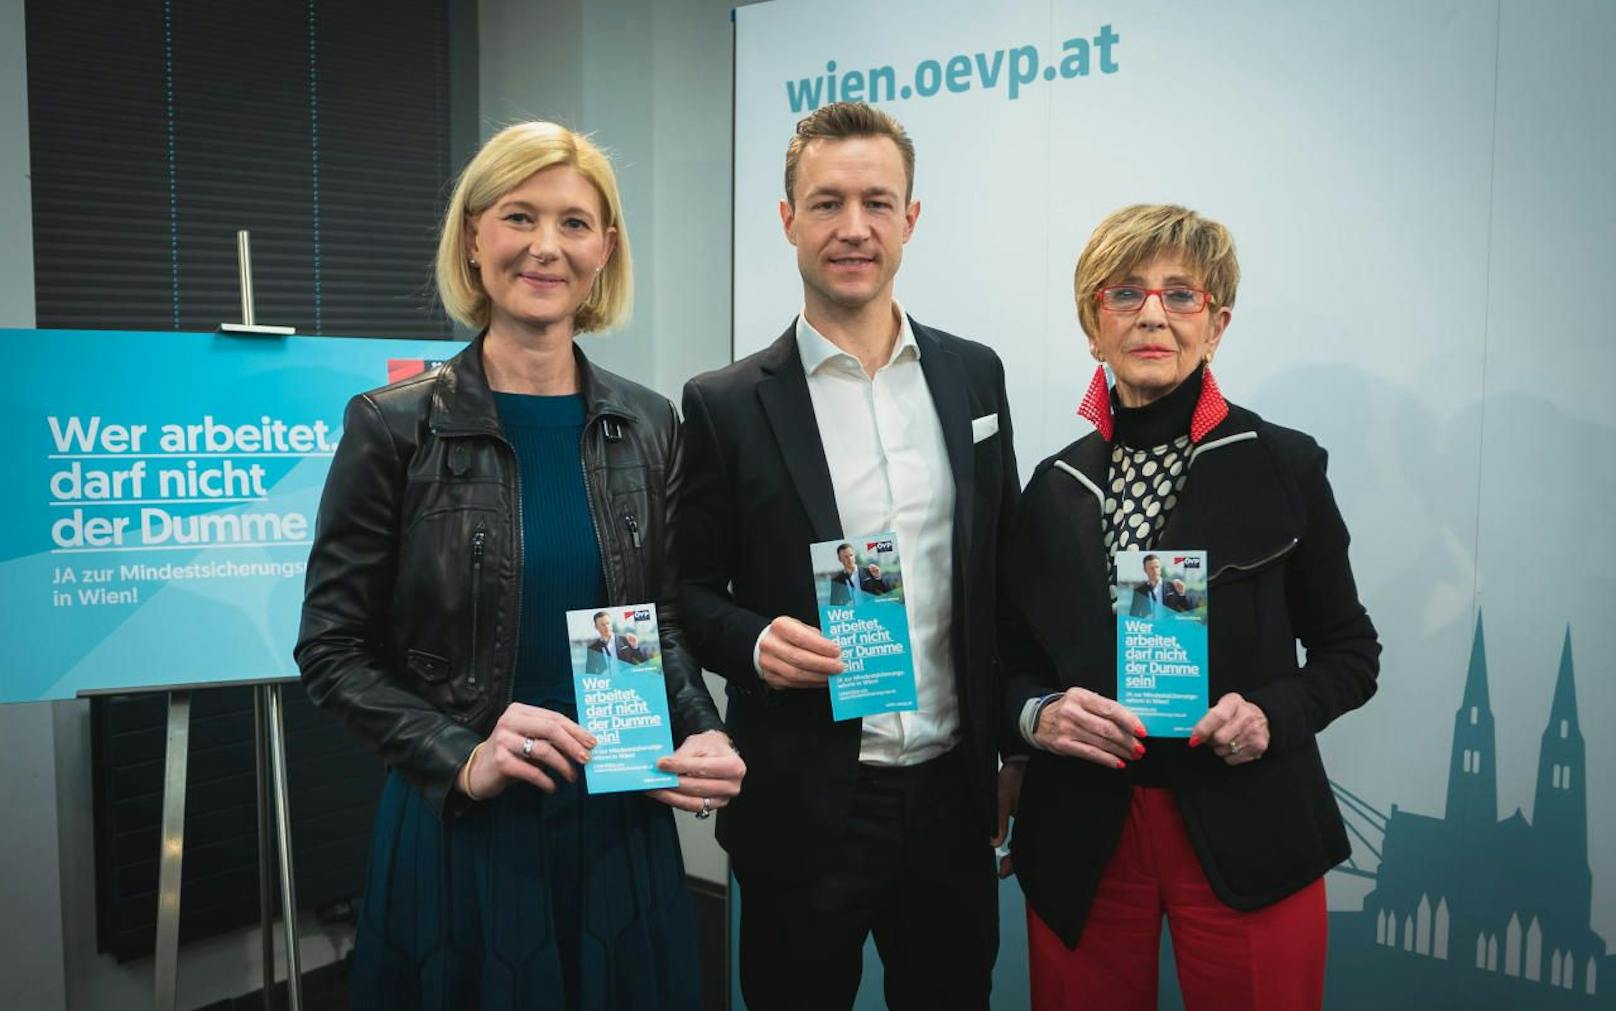 Die ÖVP Wien startet im Gemeindebau eine Werbekampagne für die Mindestsicherungsreform (v.l.n.r.: Landesgeschäftsführerin Bernadette Arnoldner, ÖVP Wien-Chef Gernot Blümel und Sozialsprecherin Ingrid Korosec).(c) ÖVP Wien